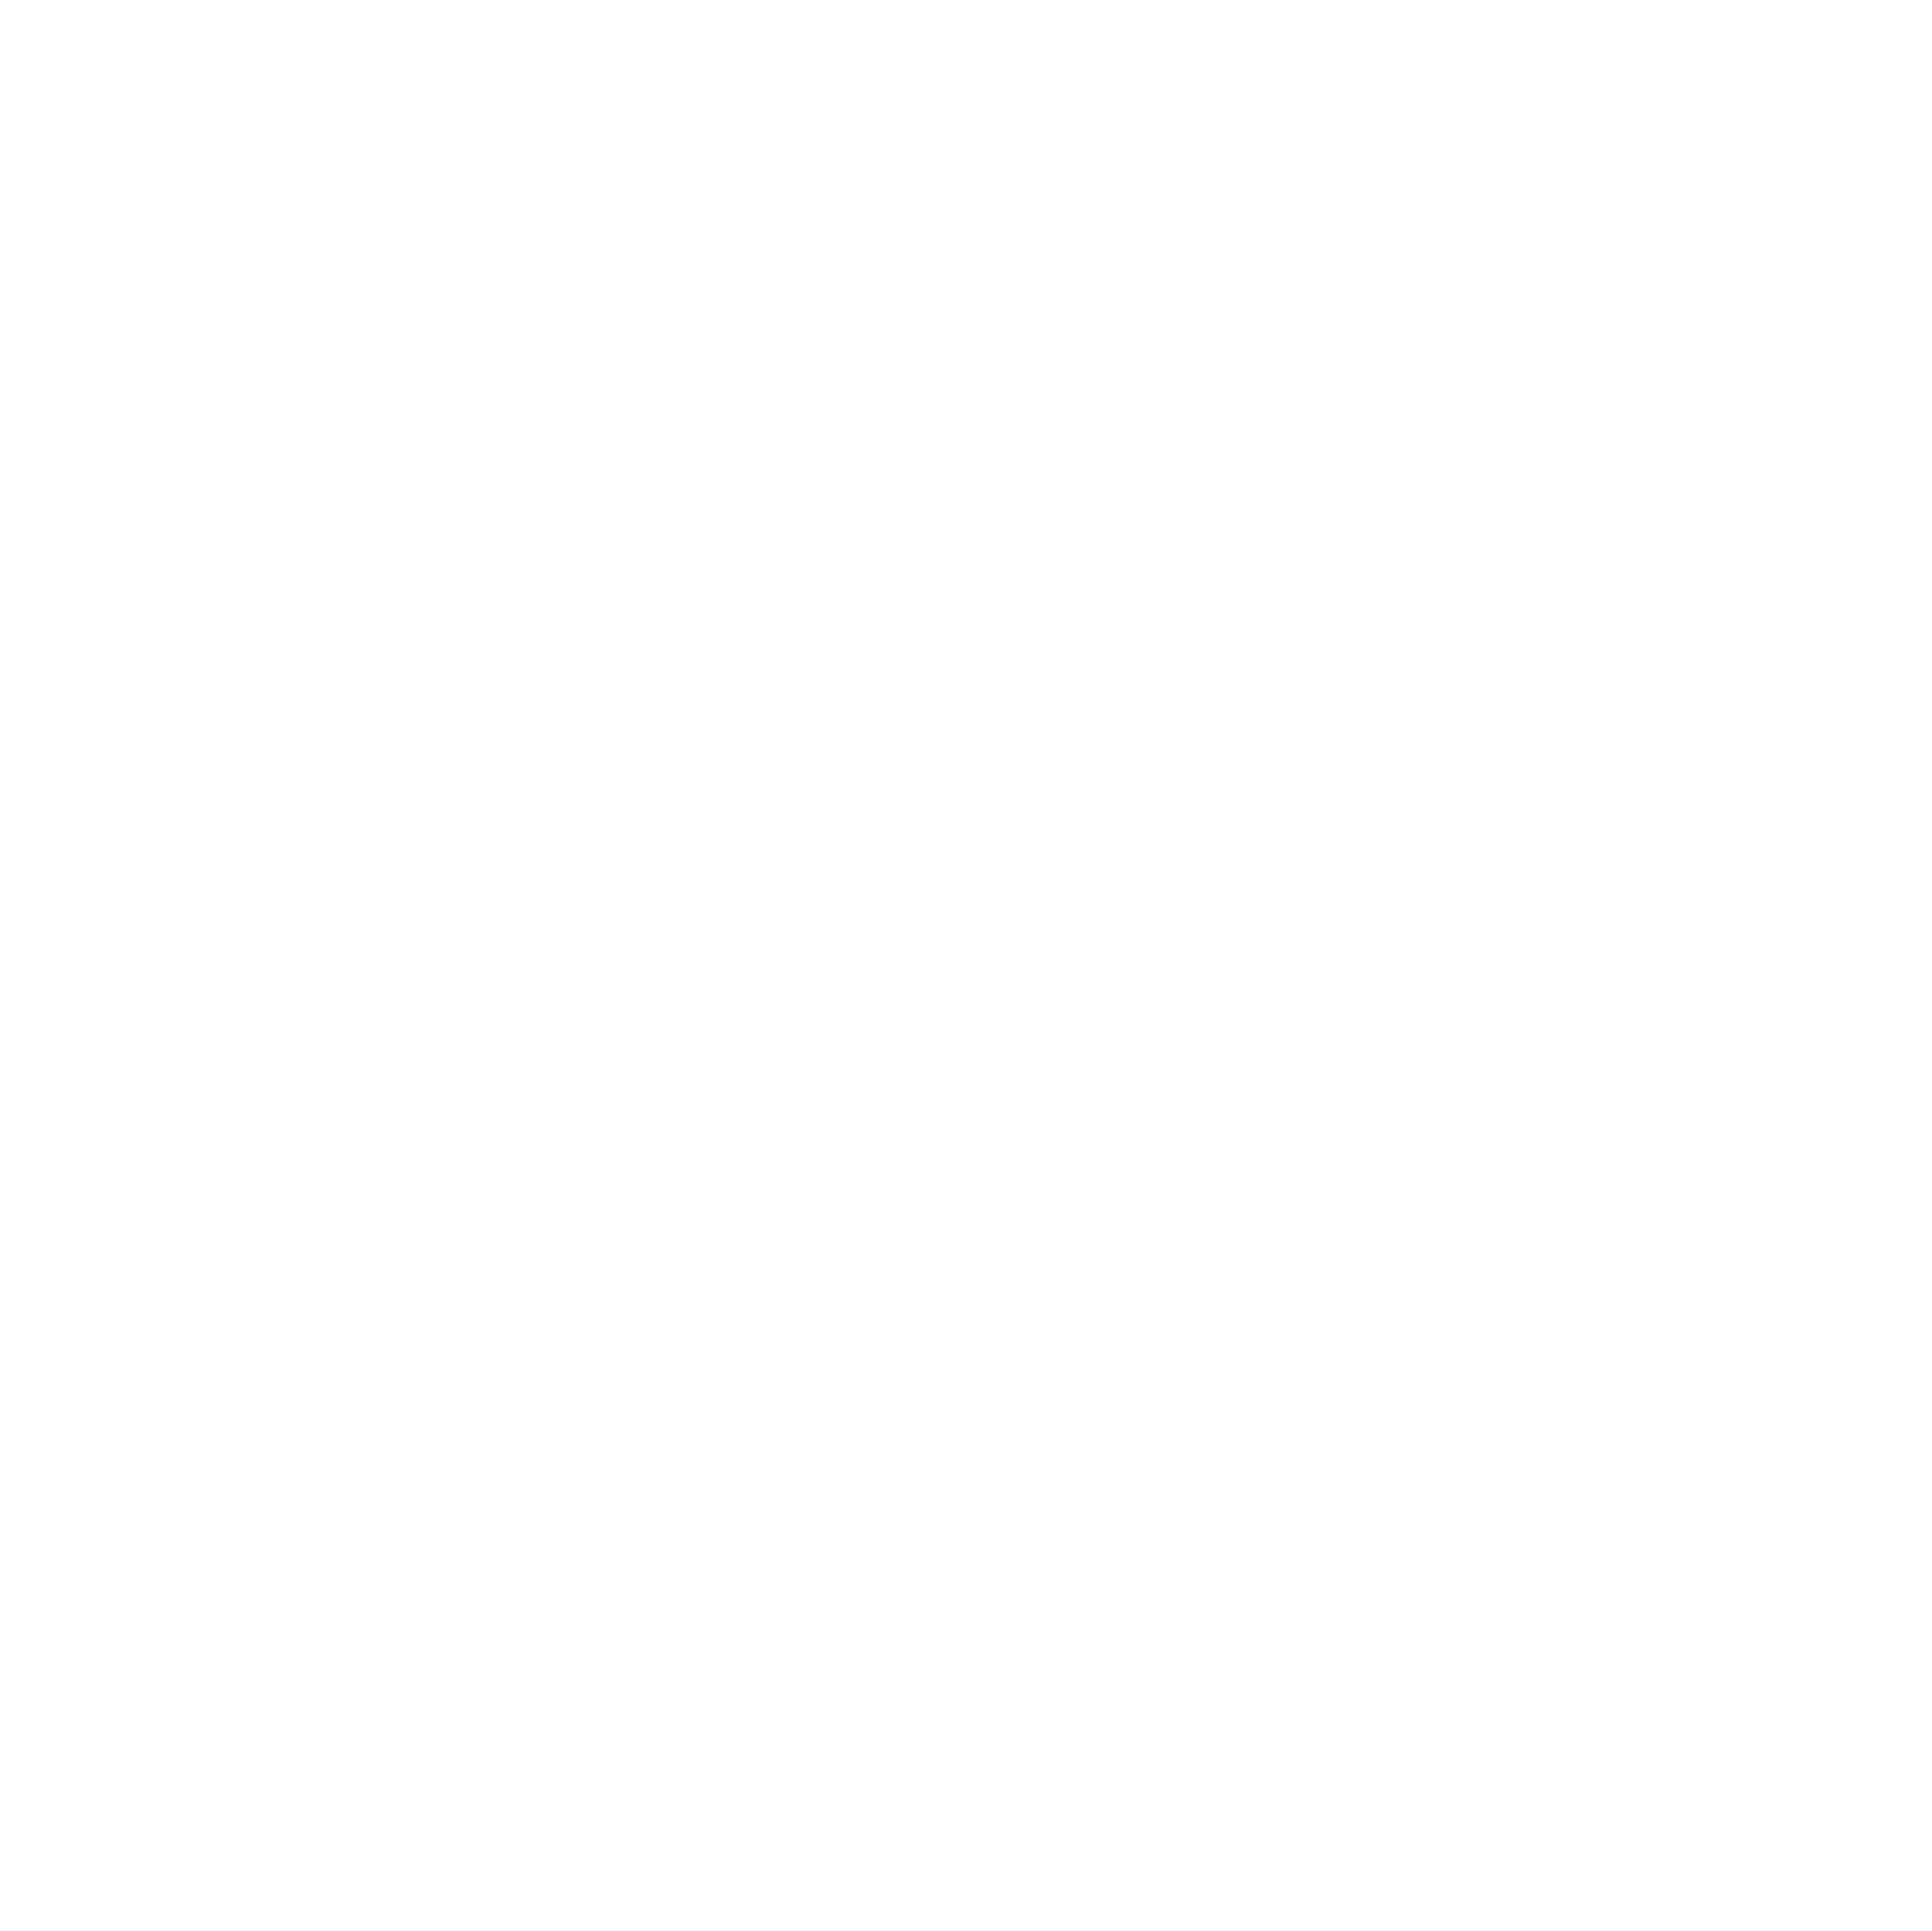 VietWOW.com